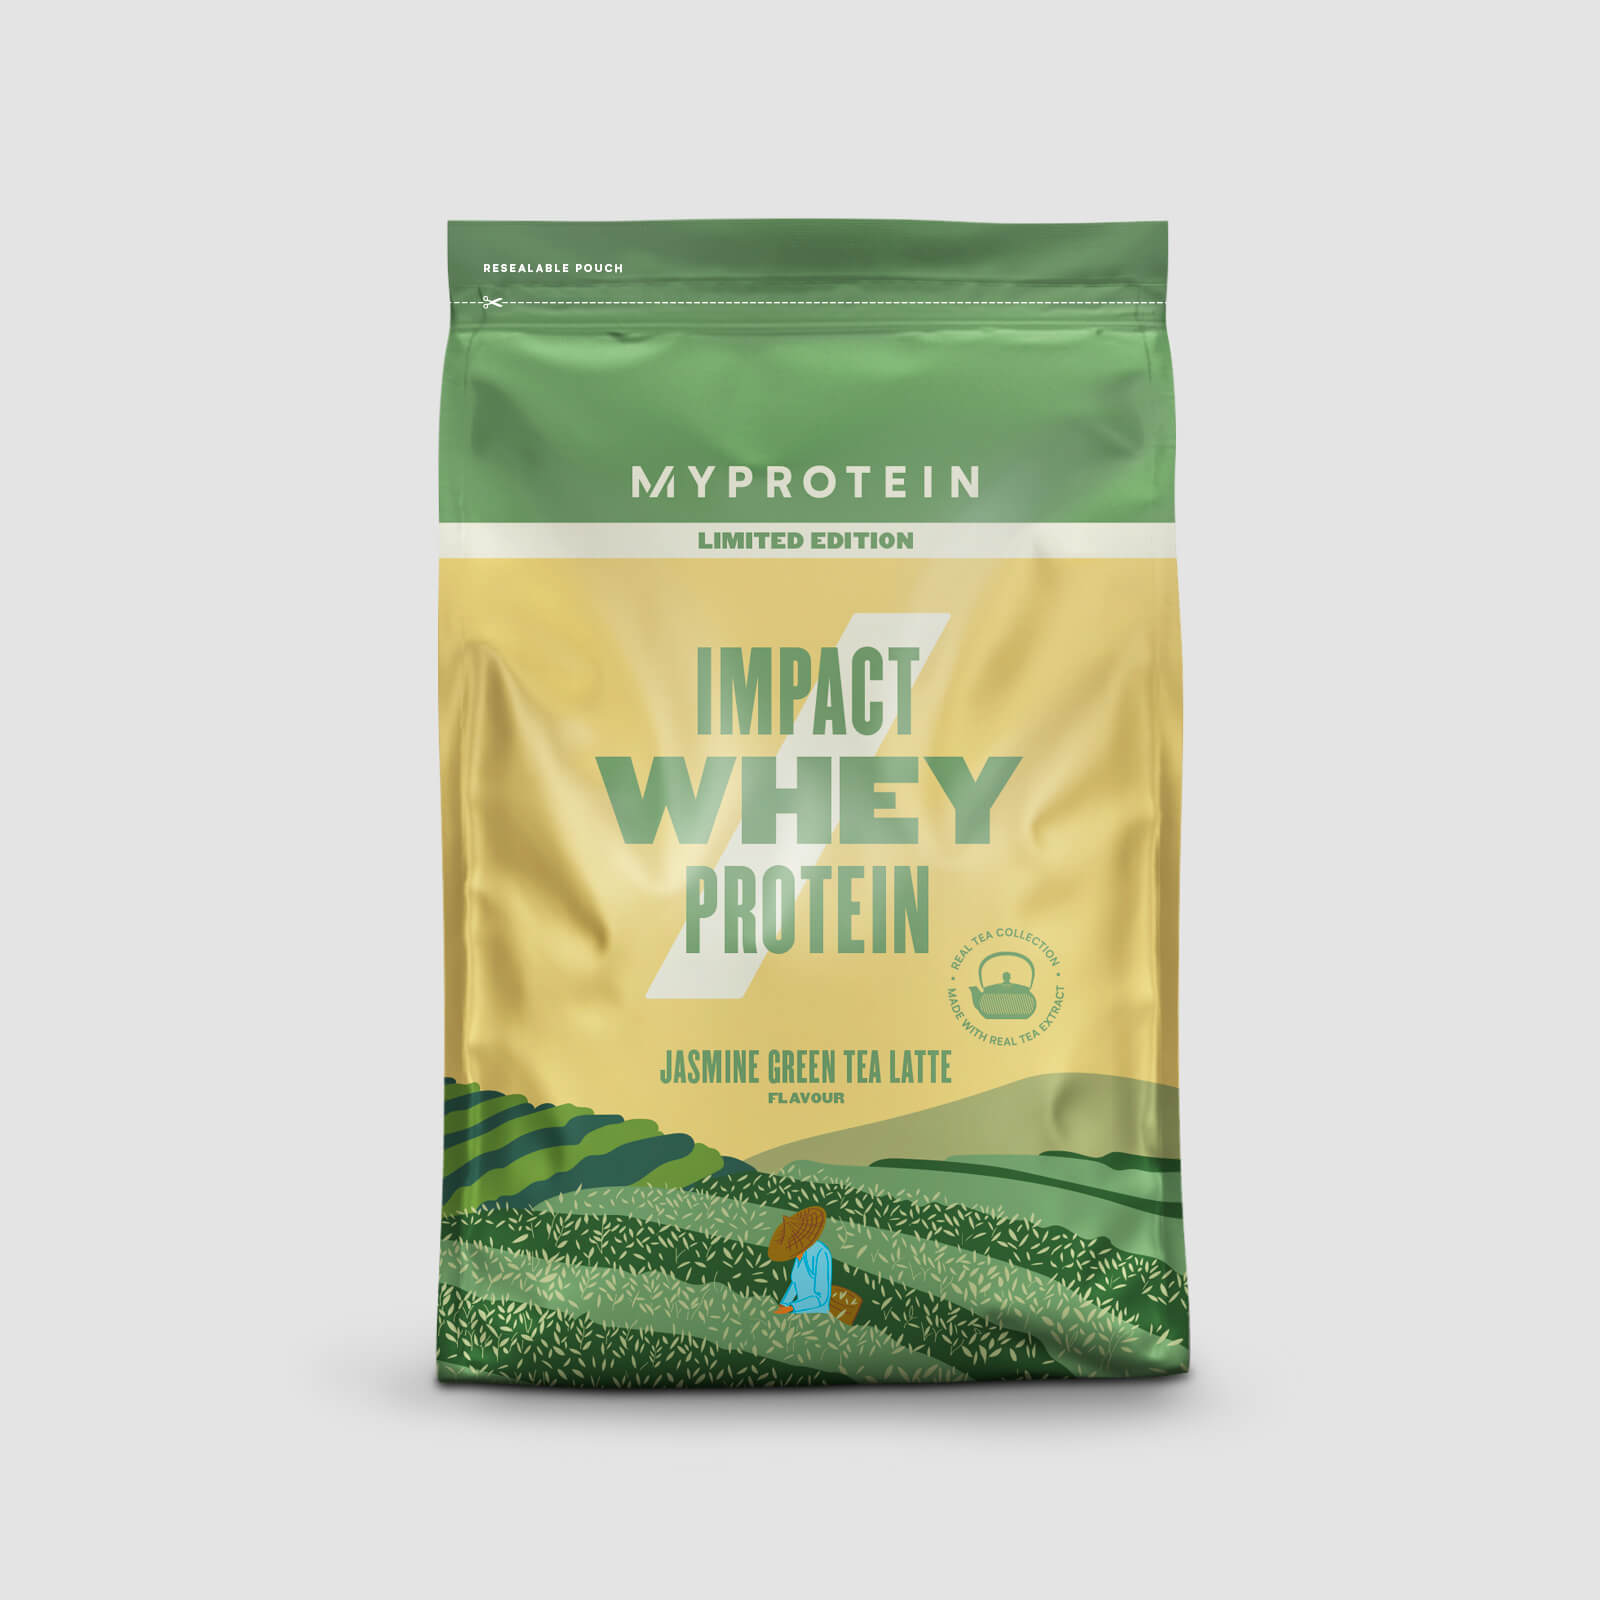 Myprotein Impact Whey Protein - 250g - Jasmine Green Tea Latte